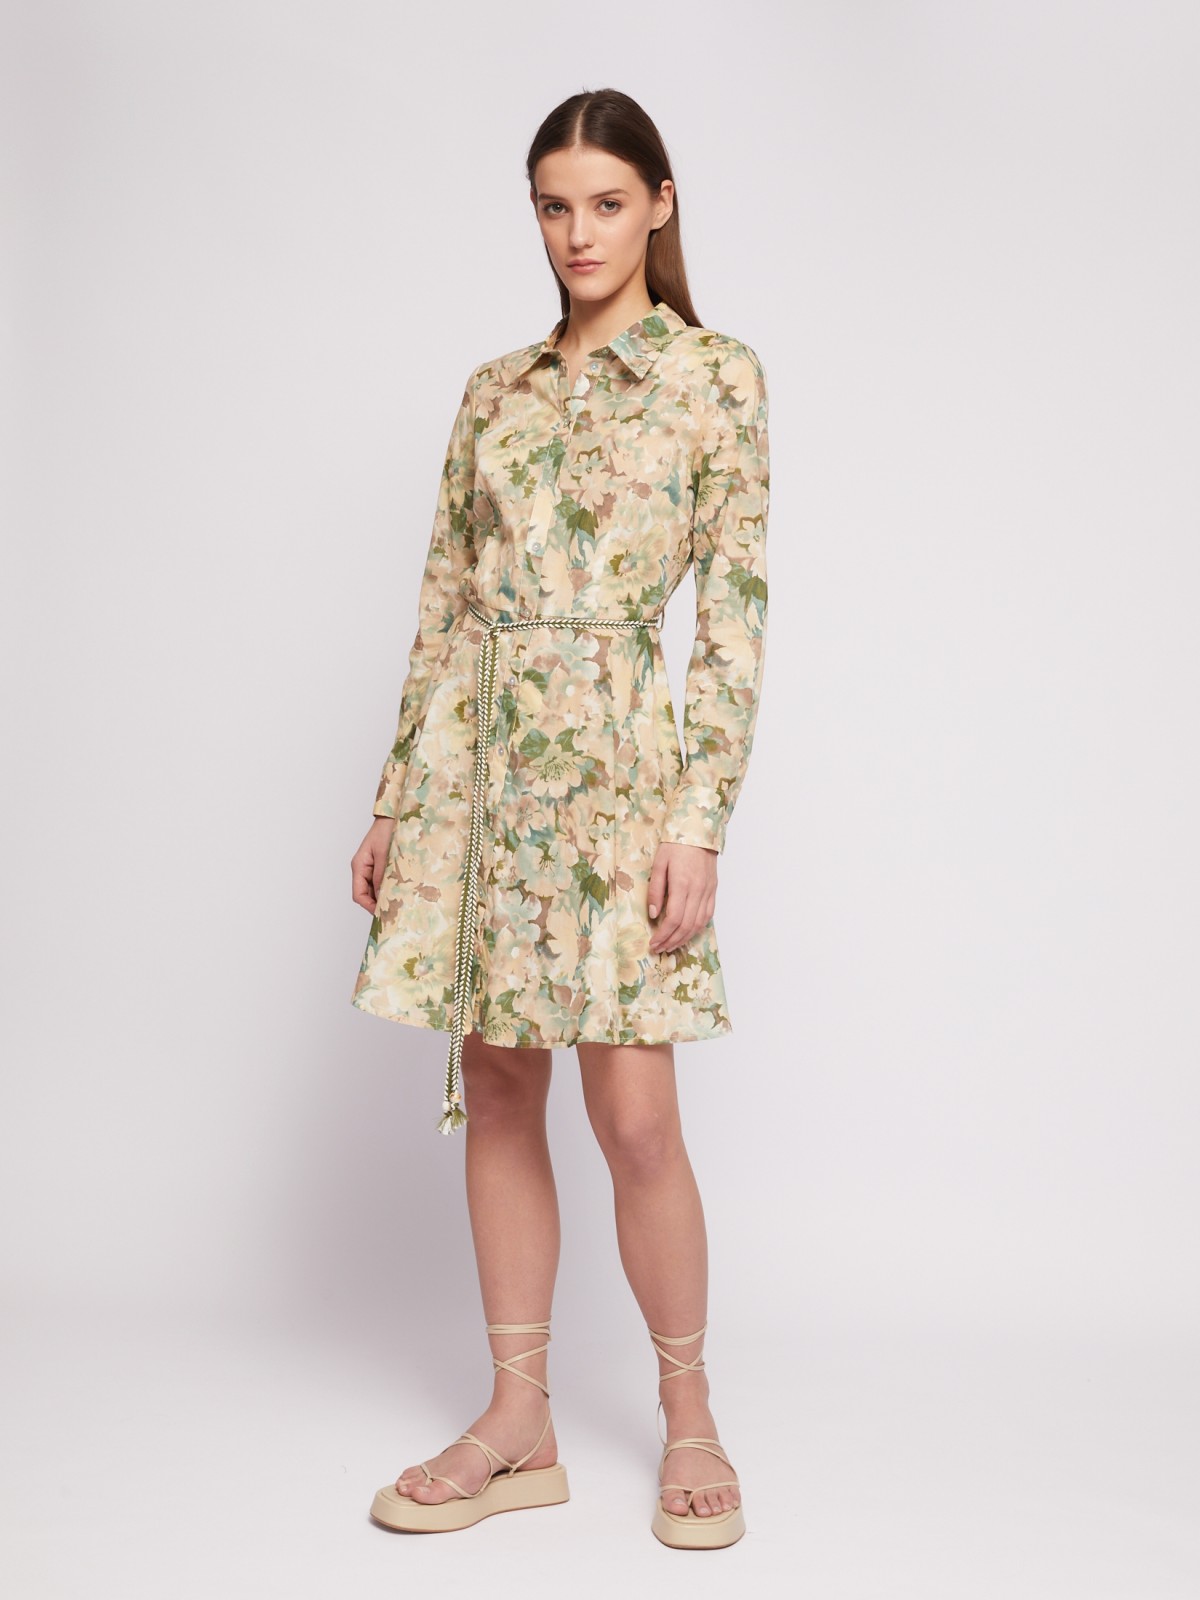 Платье-рубашка из хлопка с принтом и поясом на талии zolla 024218291191, цвет лайм, размер M